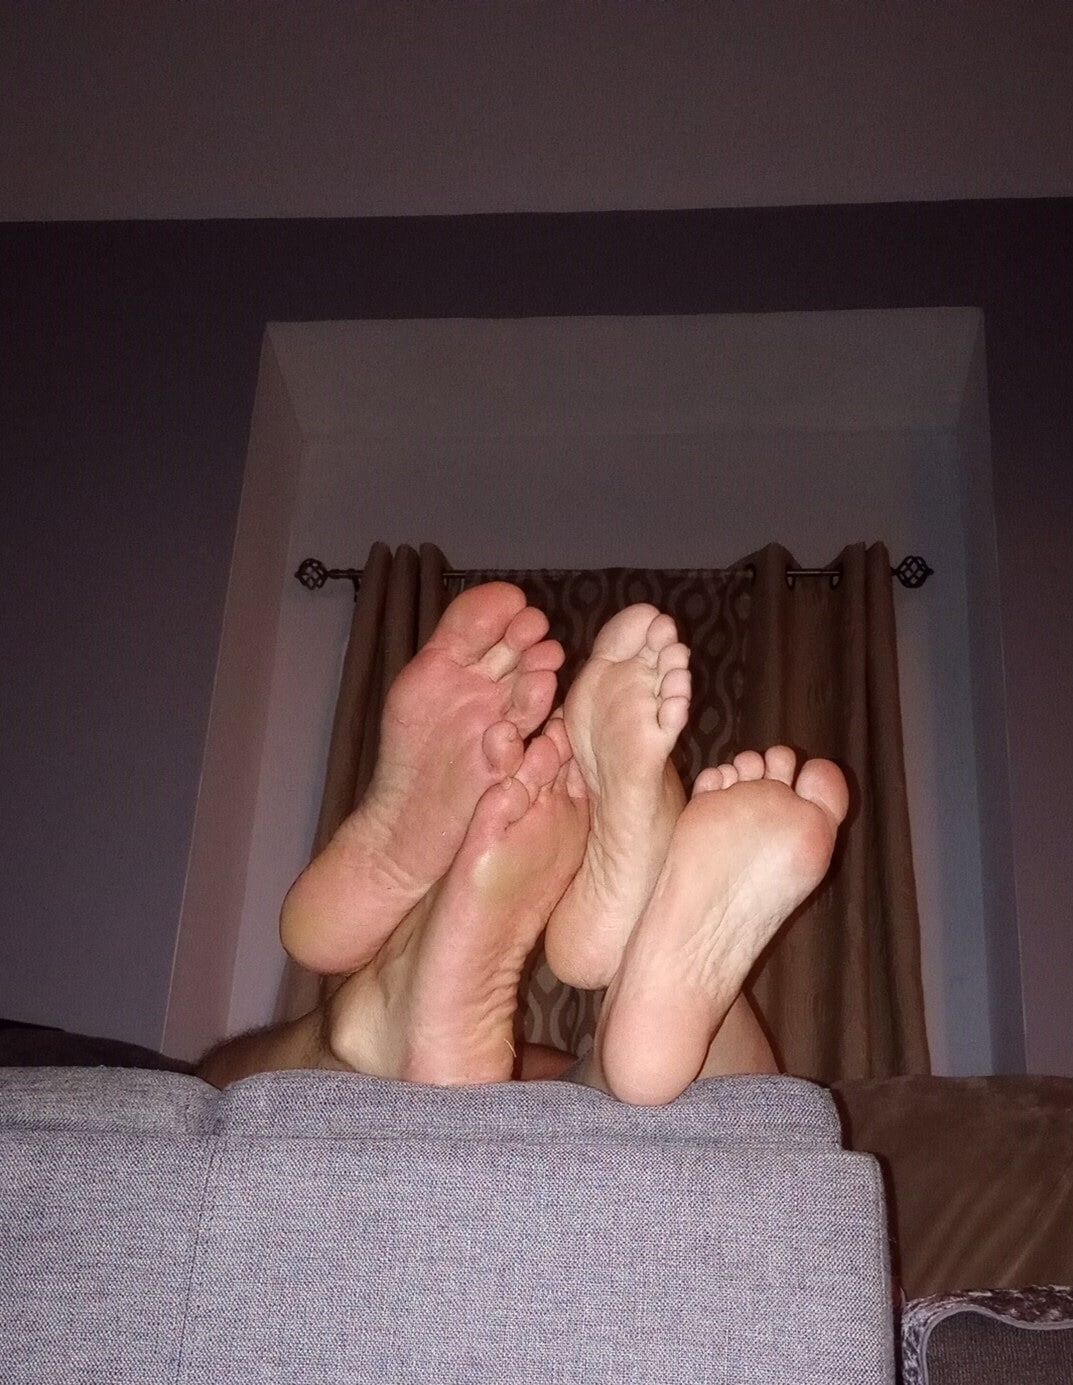 Do you like our feet together #7